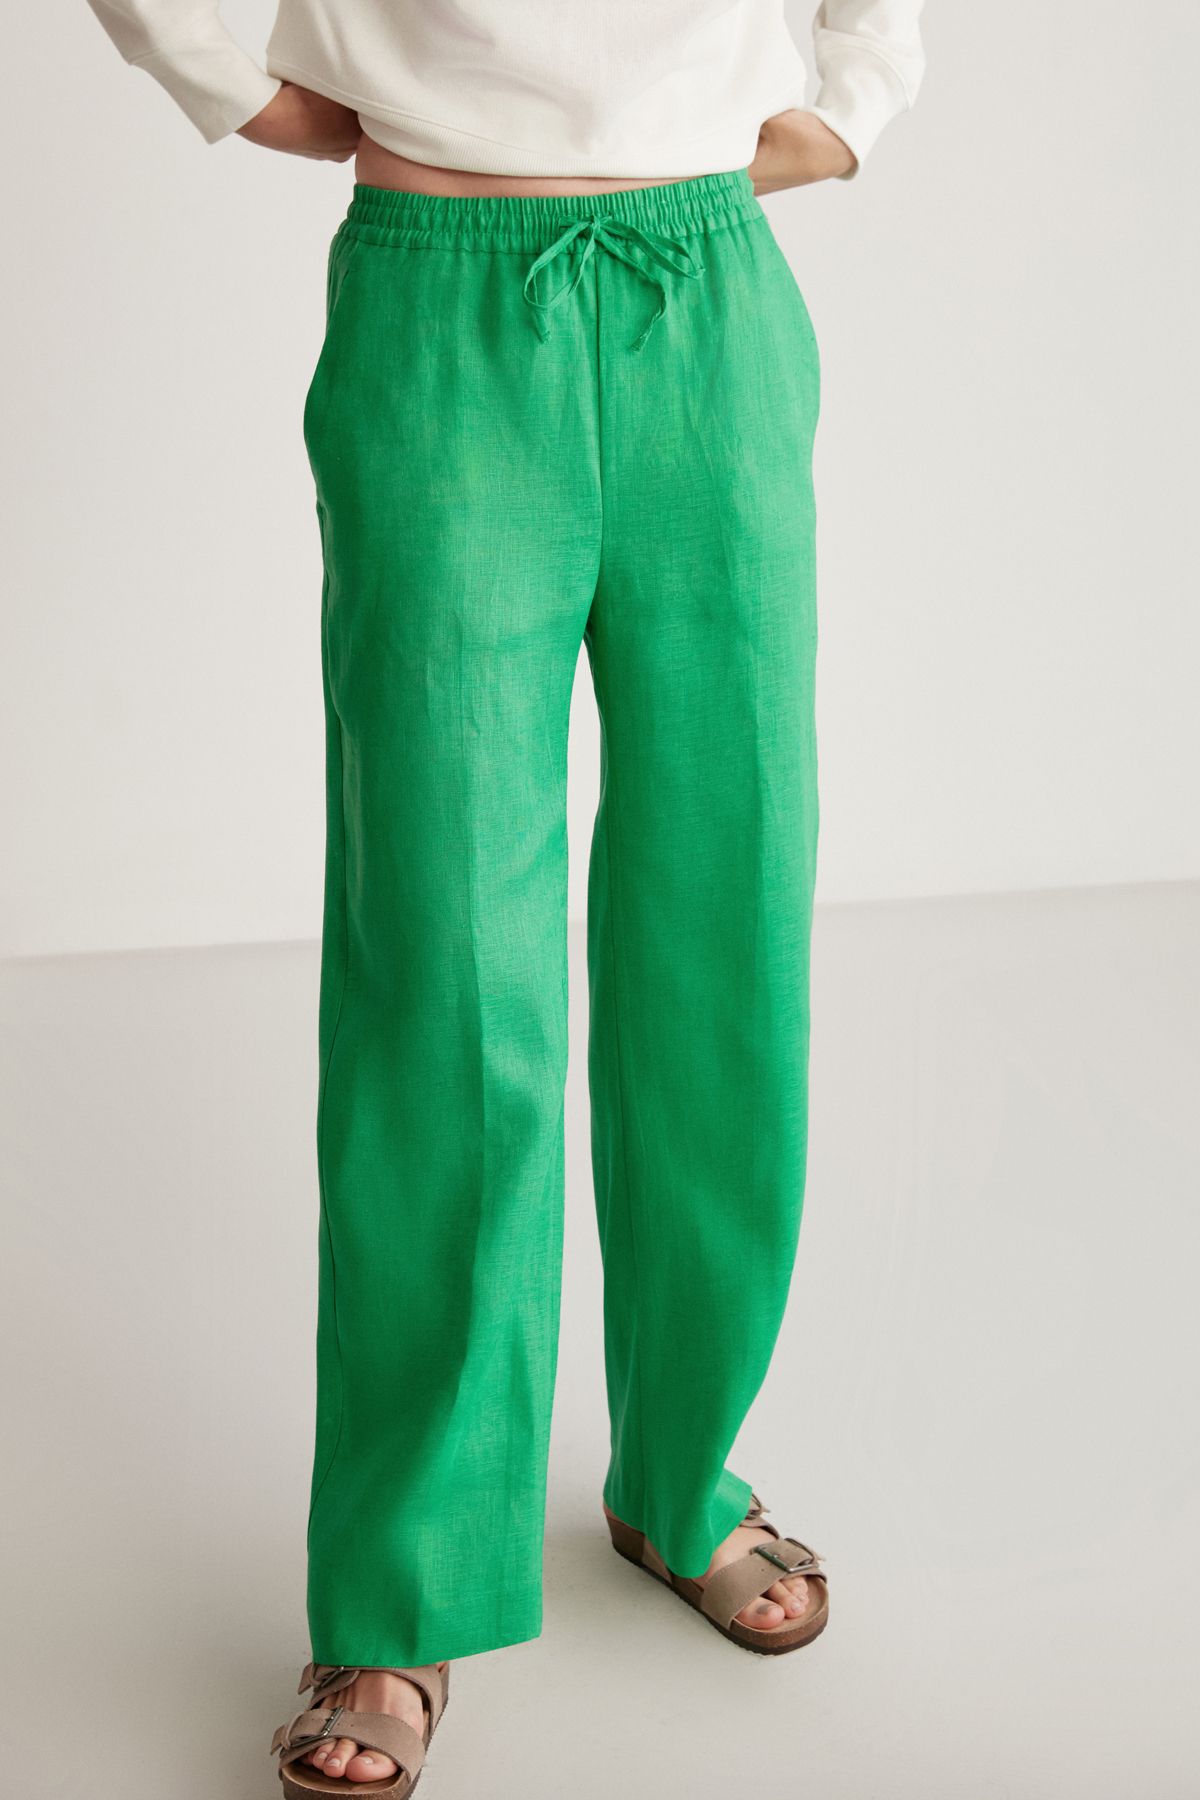 GRIMELANGE Sadıe Kadın %100 Keten Relaxed Kalıp Beli Lastikli Yeşil Pantolon